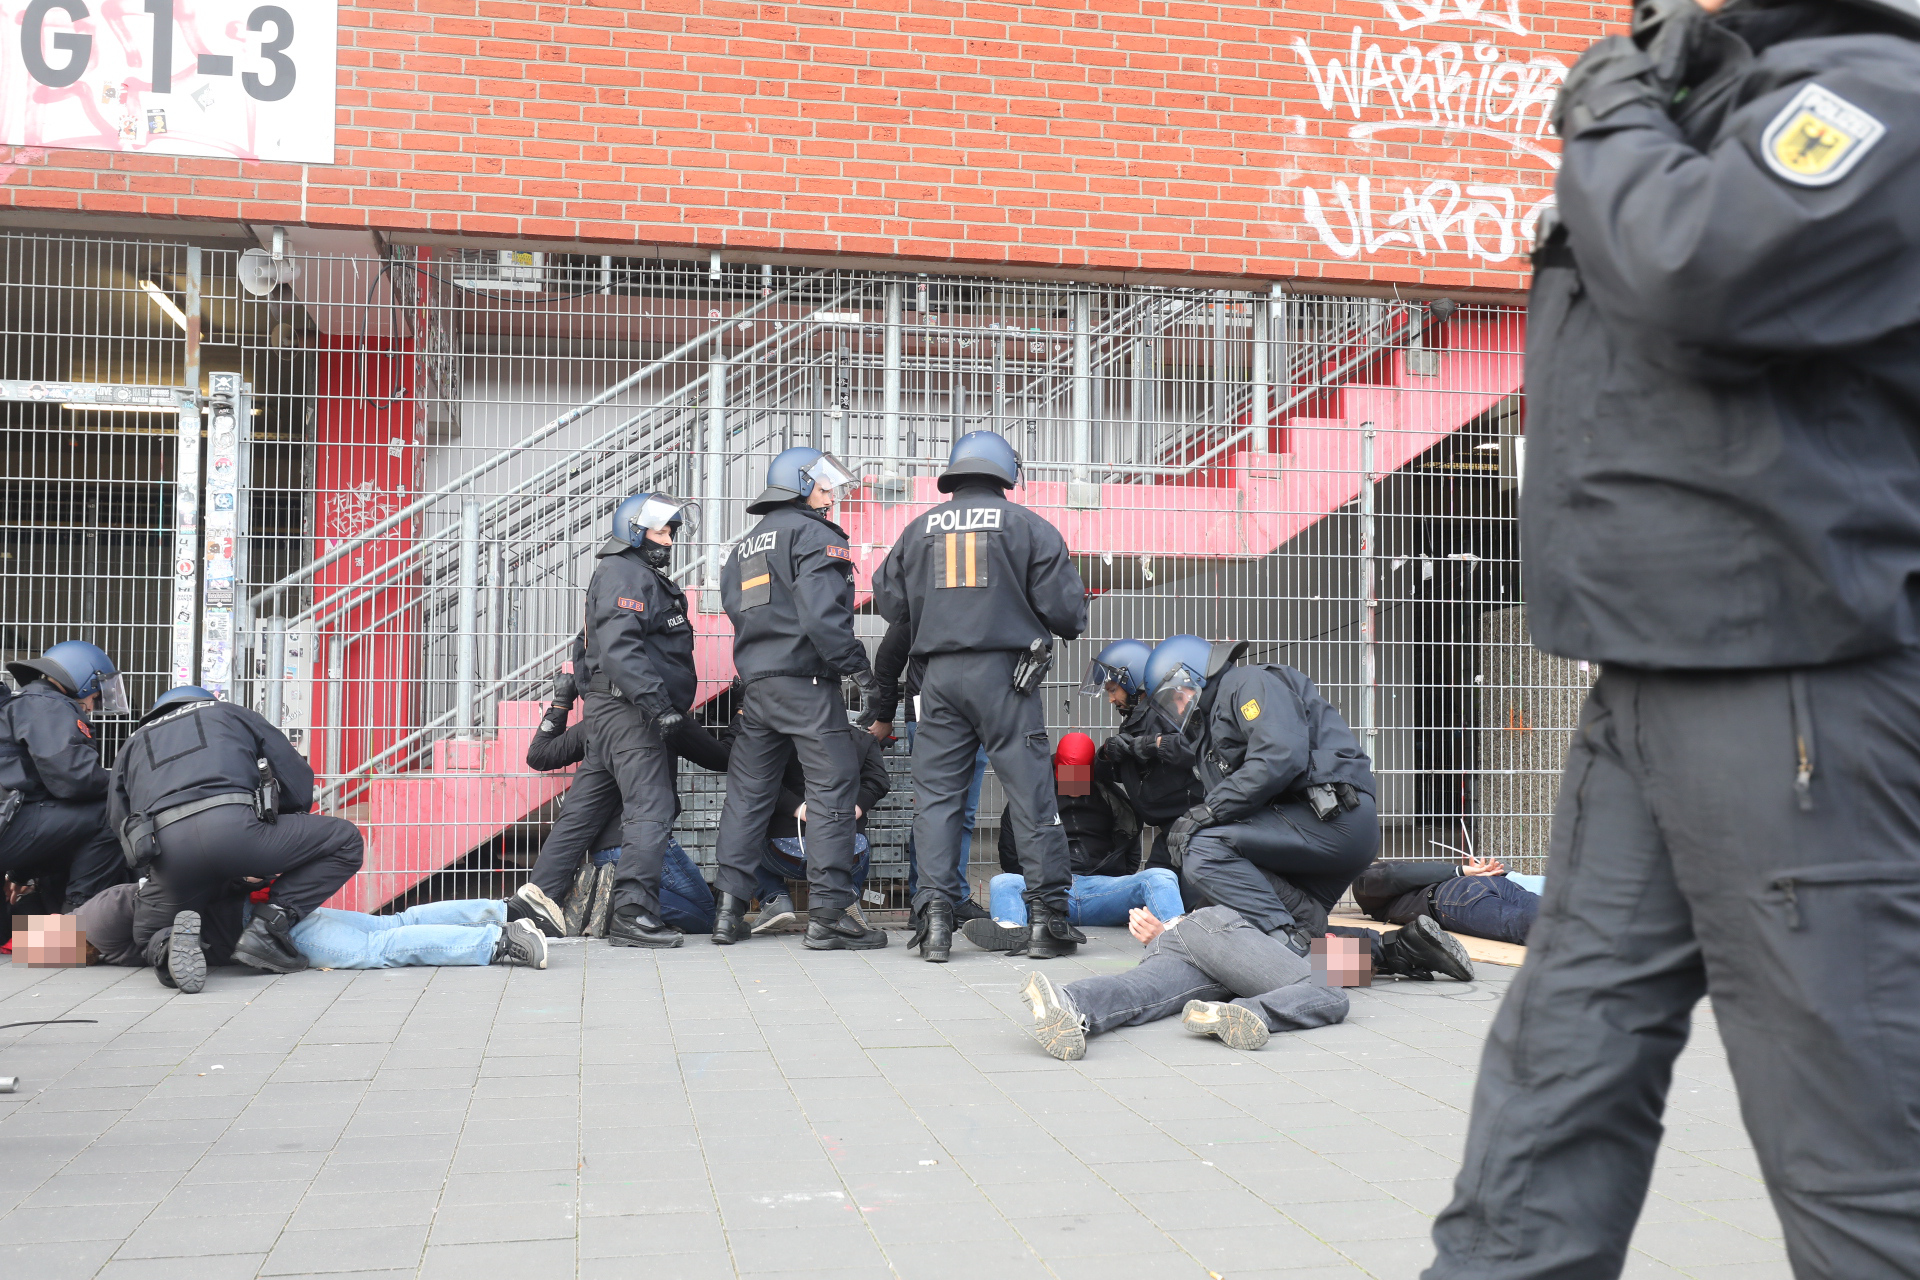 Die Polizei fixiert vor dem Derby St. Pauli-Fans am Boden.